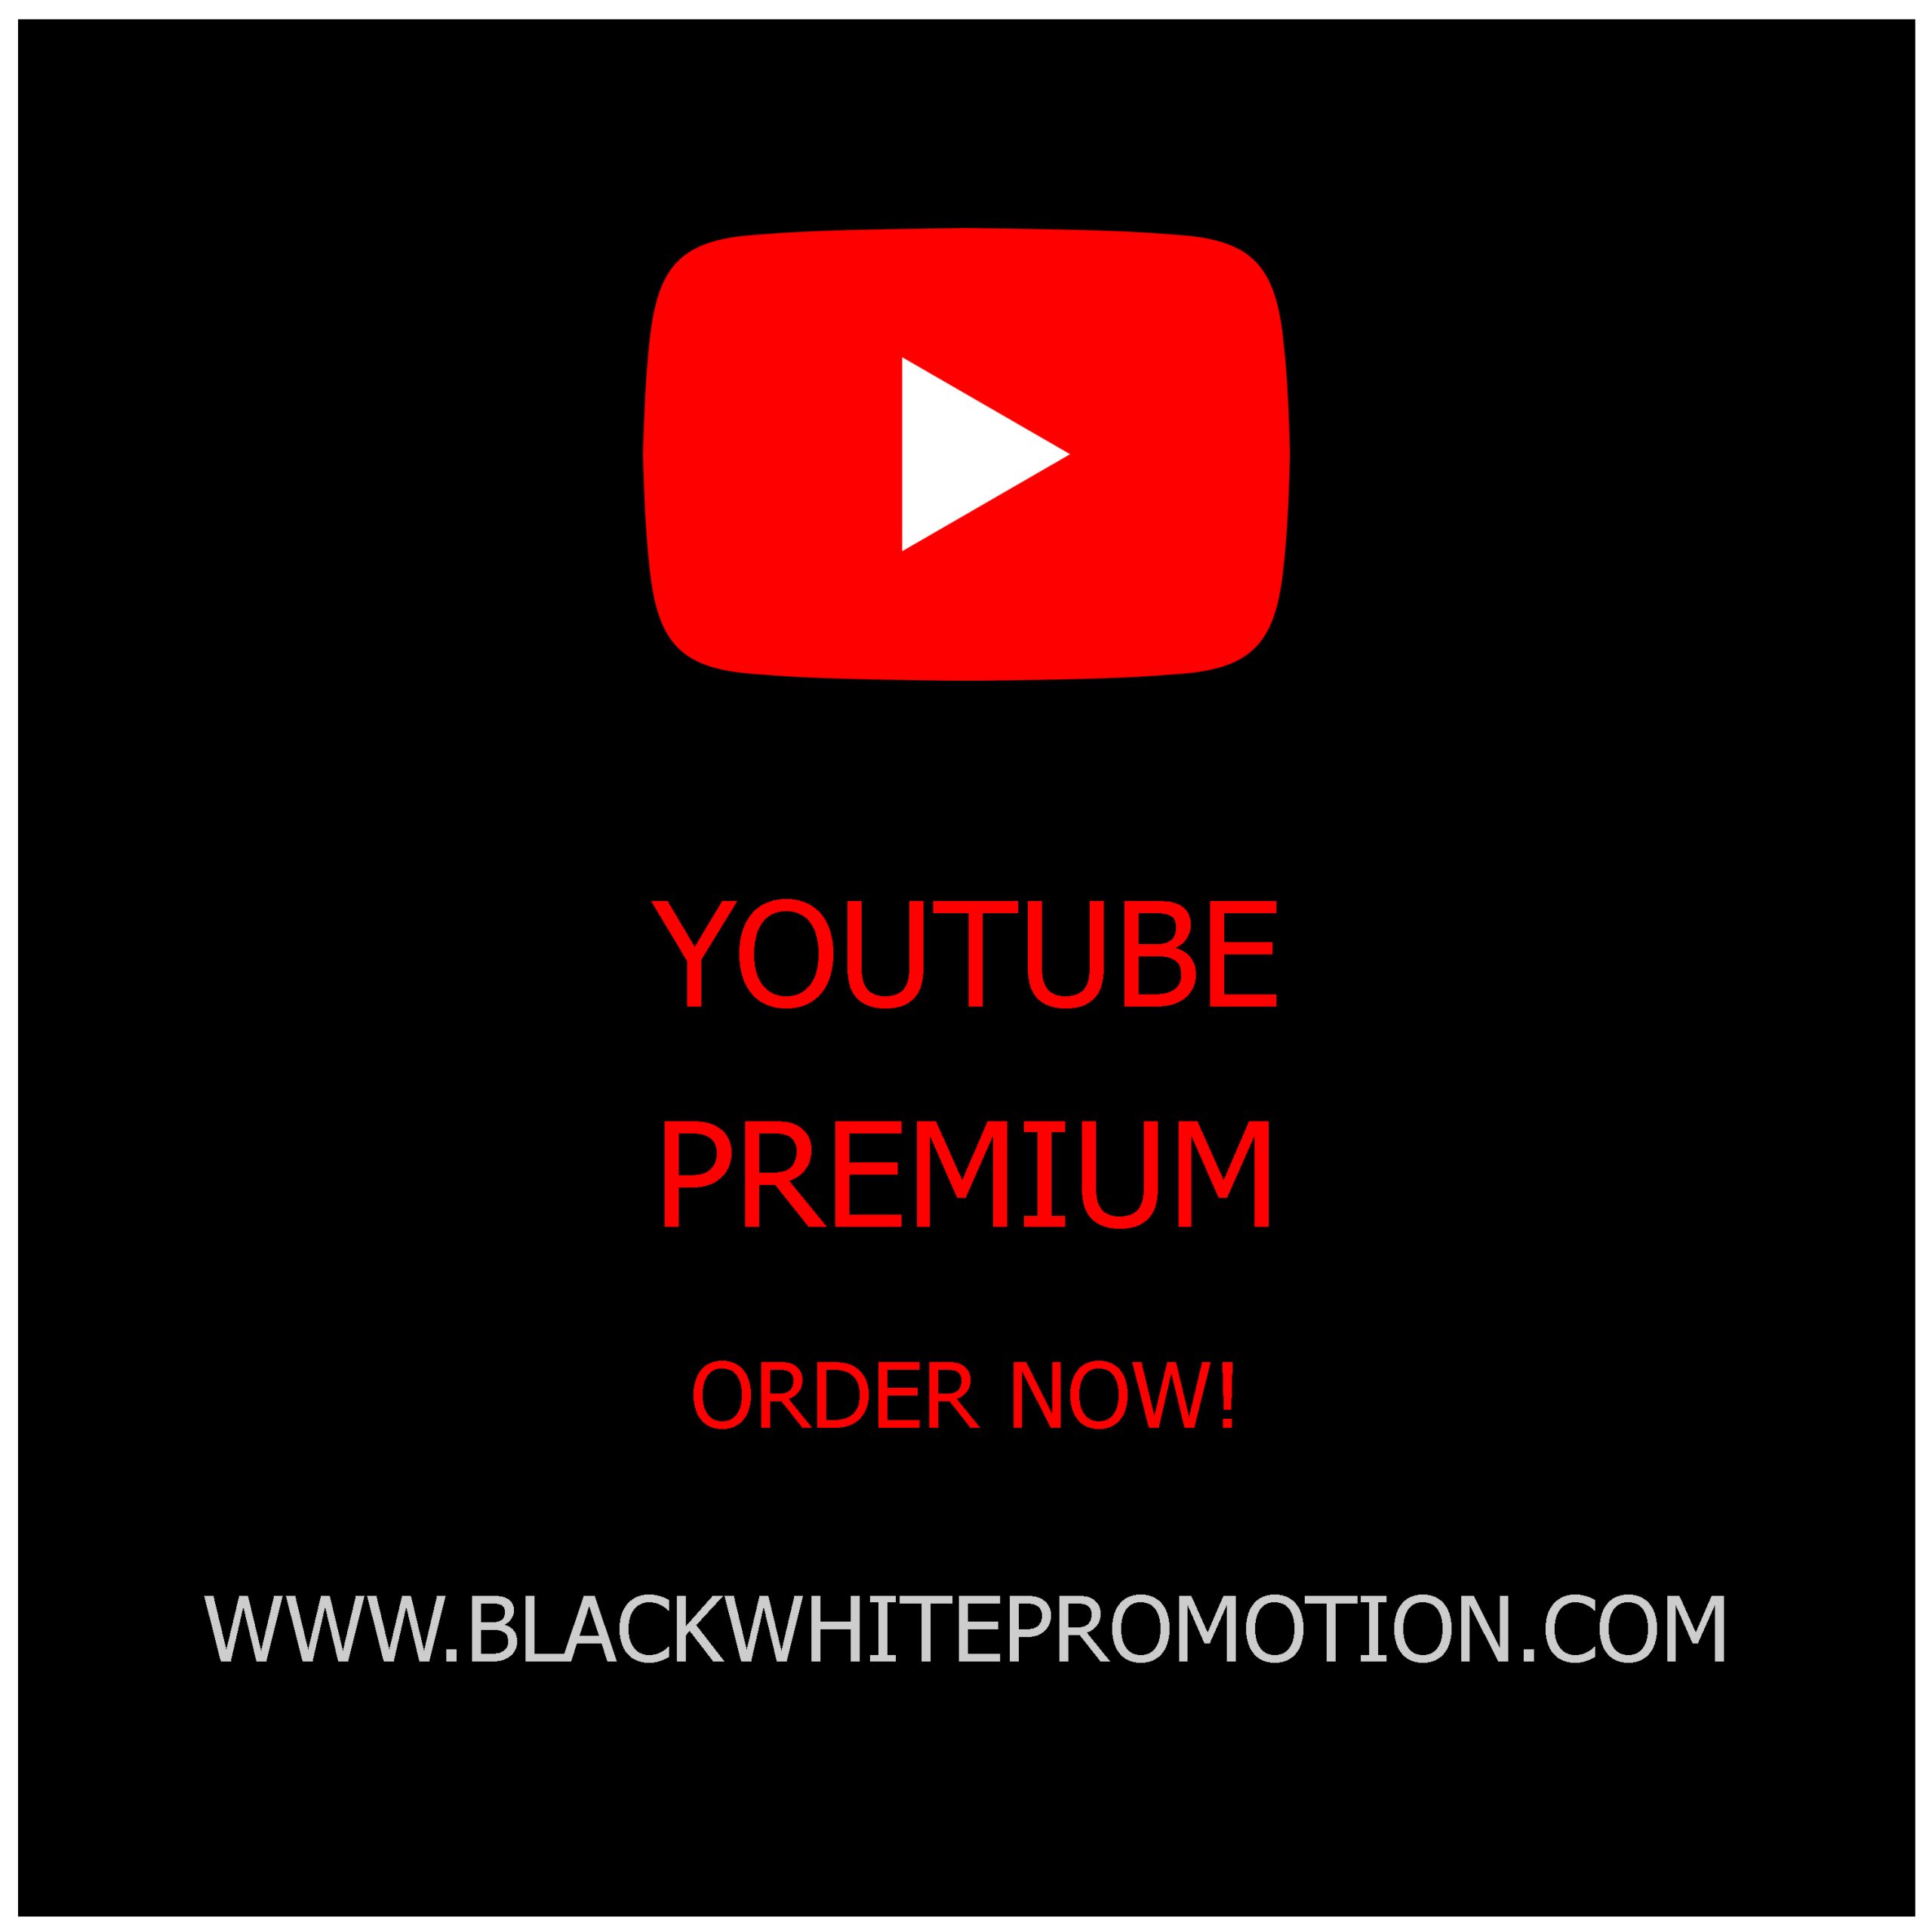 YouTube Premium Black White Promotion